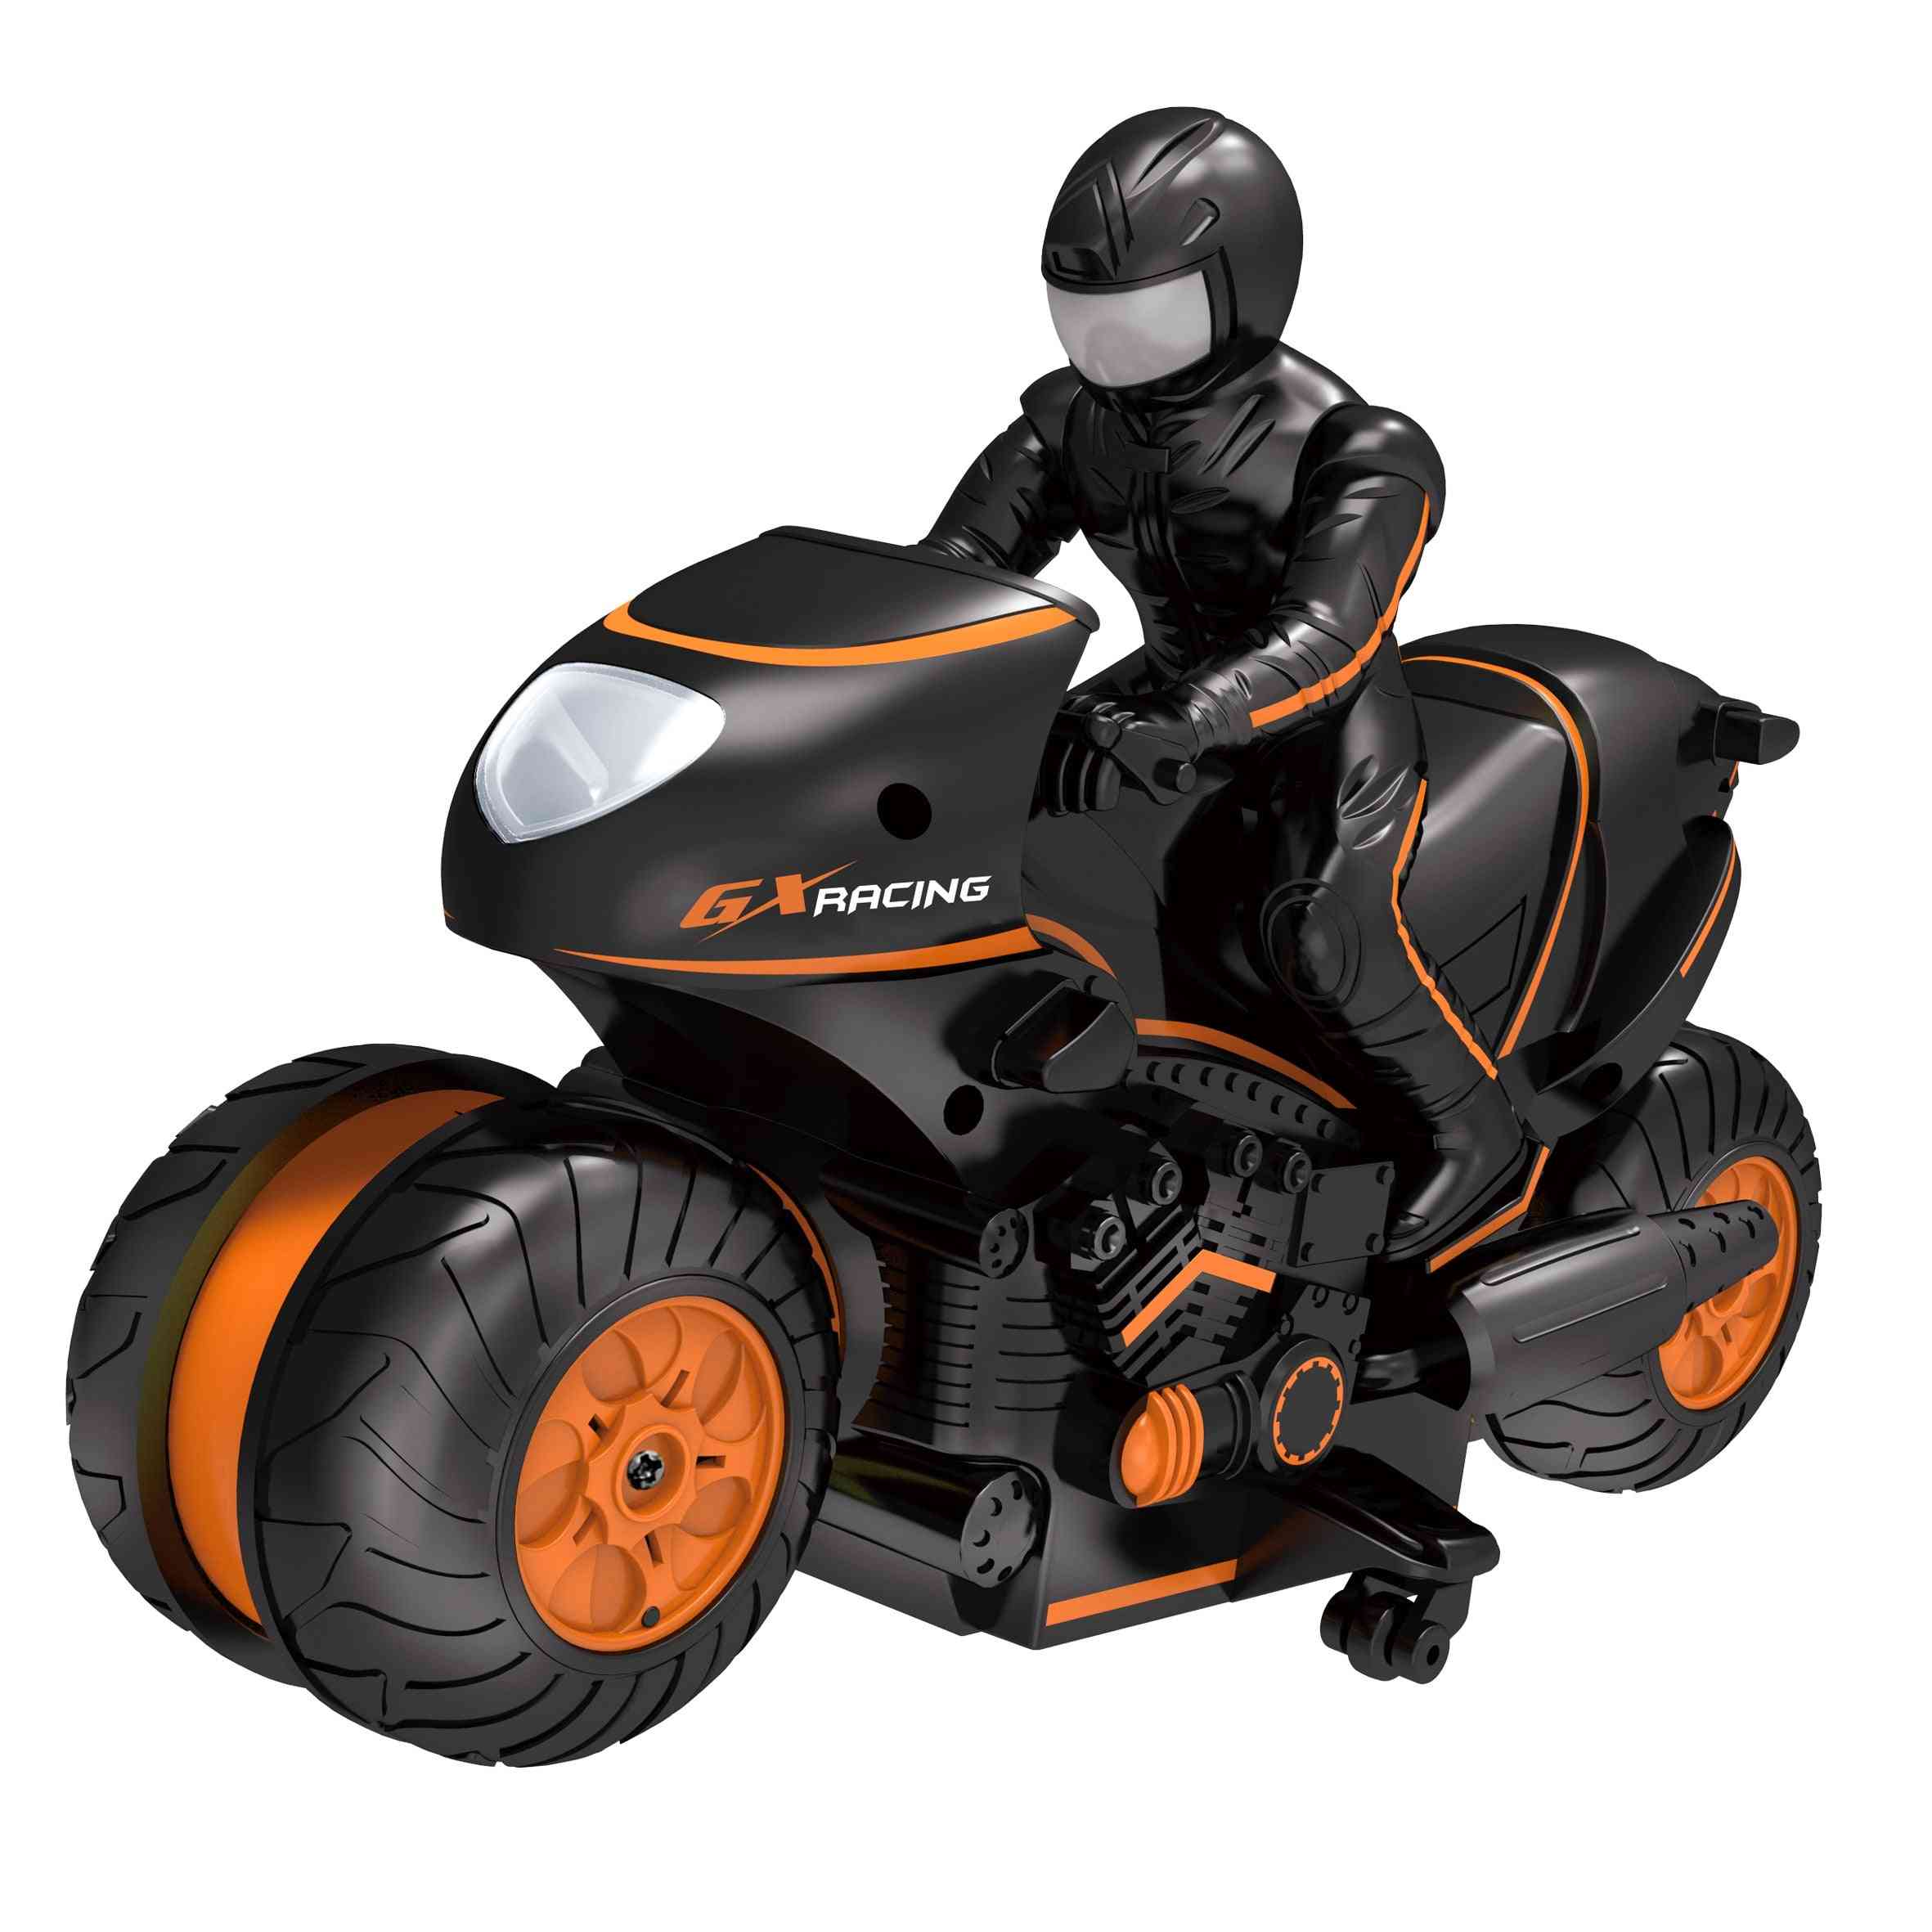 Mini motocikel premote control - 2,4 GHz visoke hitrosti za